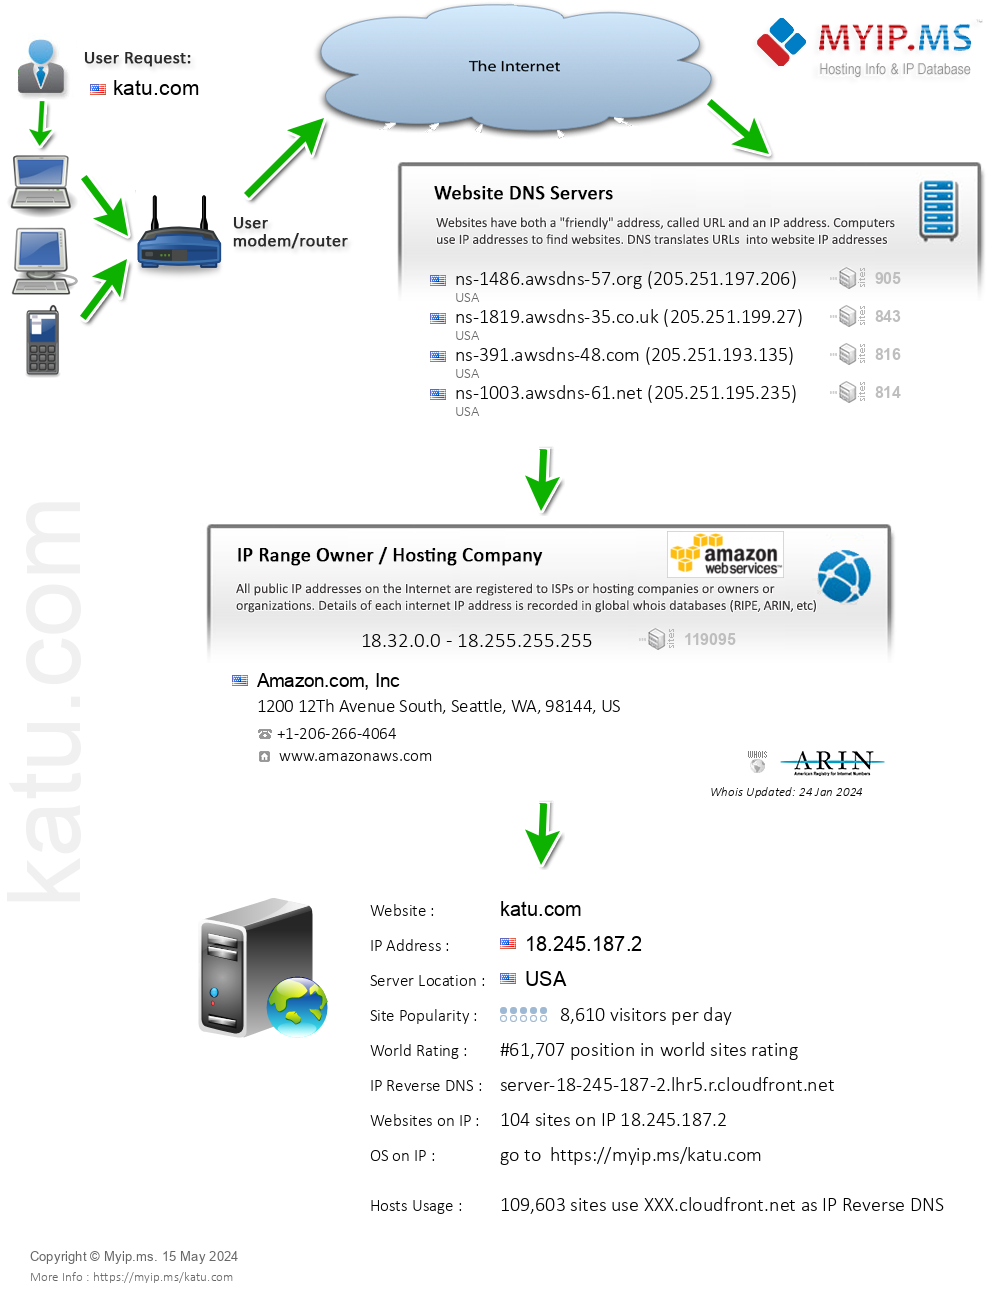 Katu.com - Website Hosting Visual IP Diagram